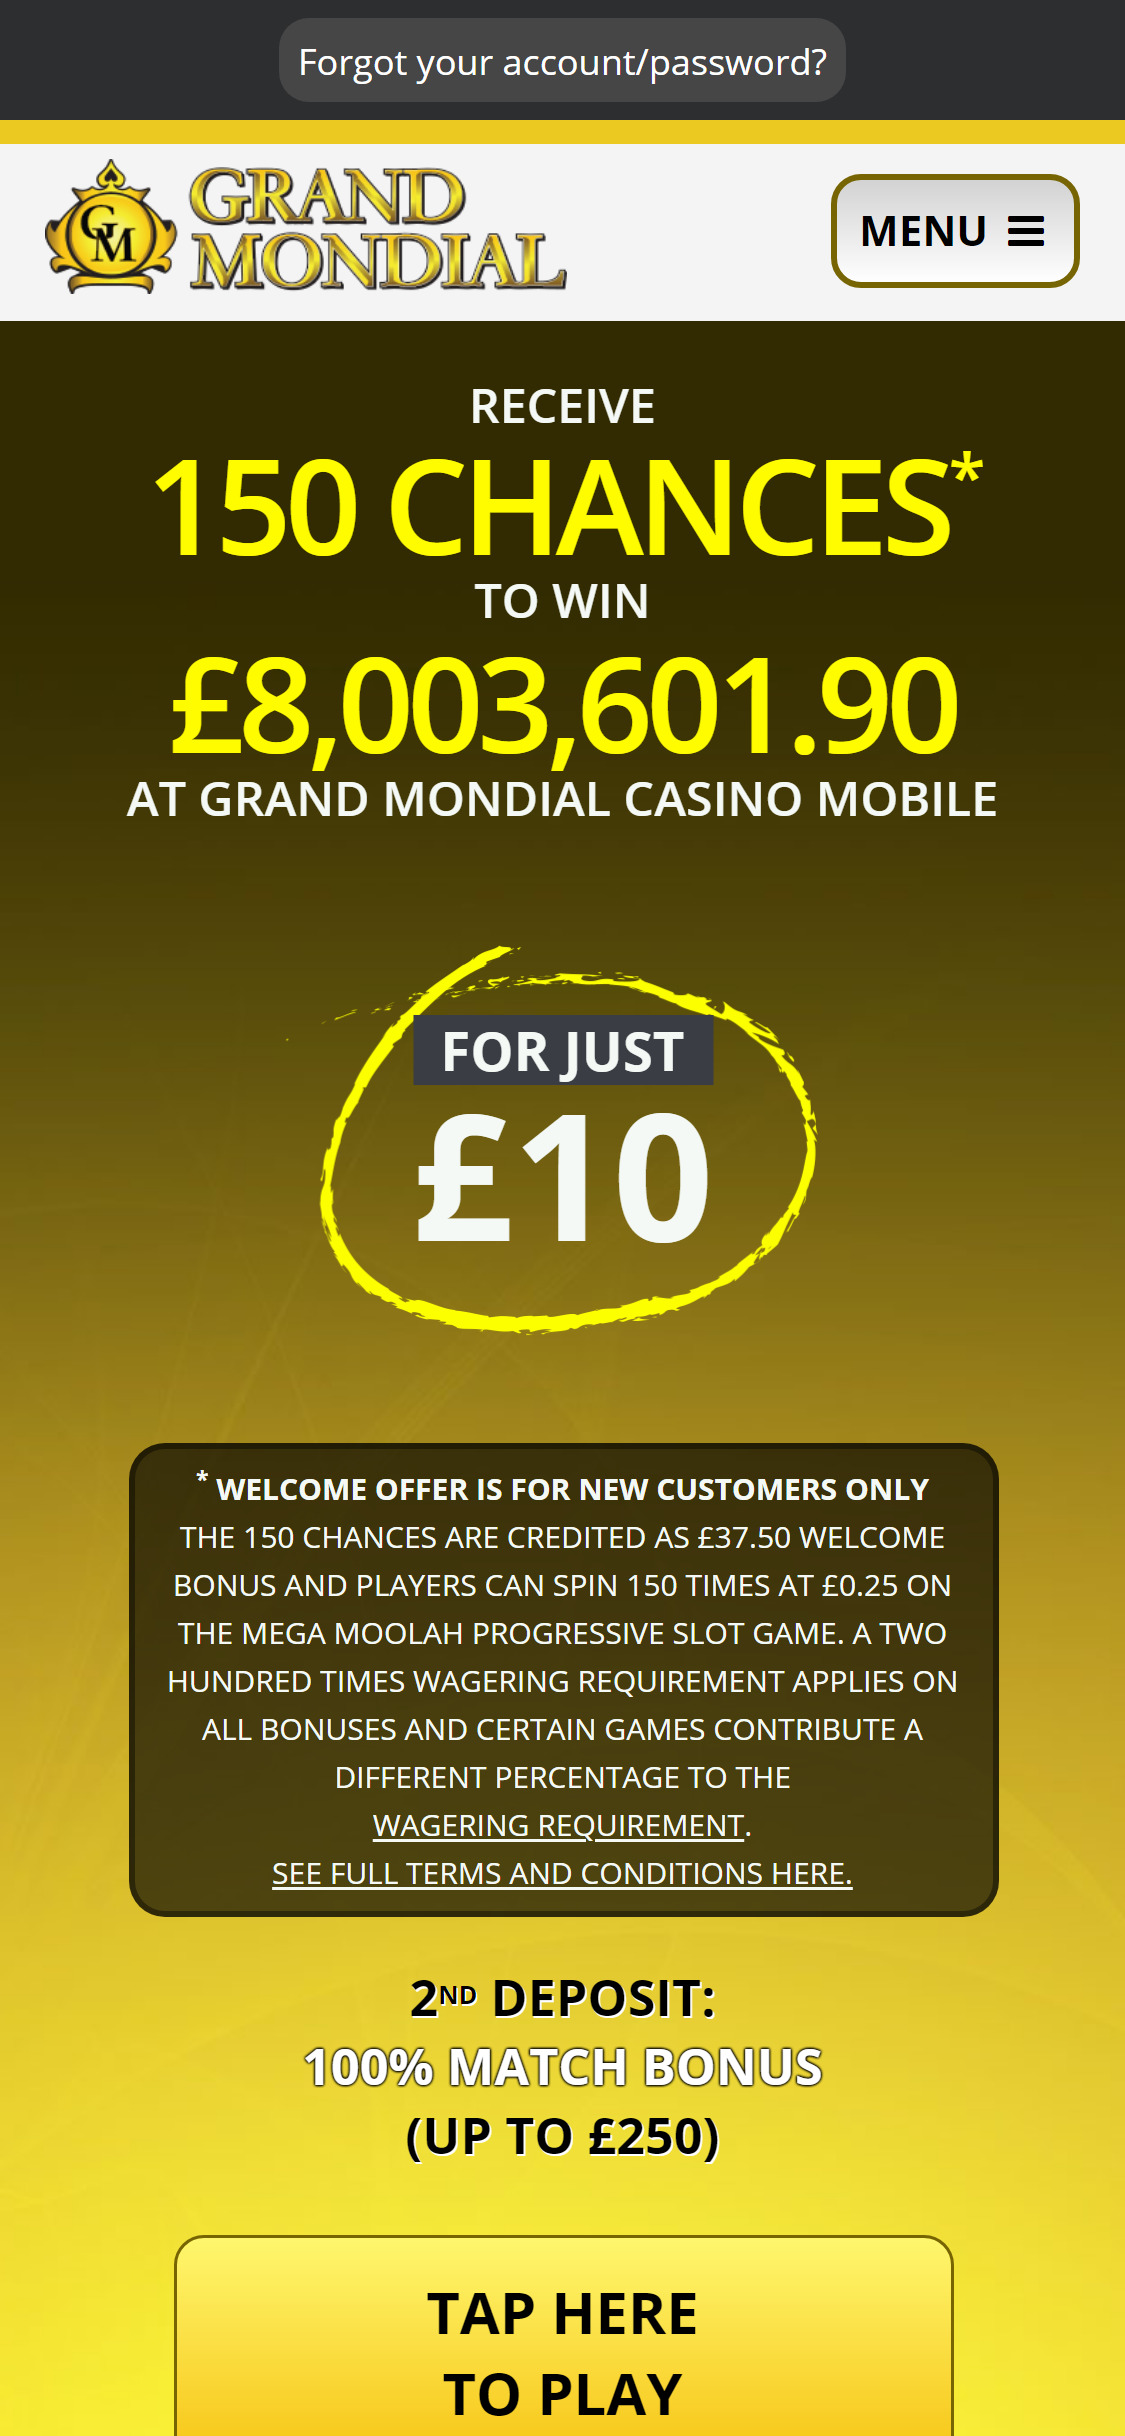 Grand Mondial Casino EU Mobile No Deposit Bonus Review